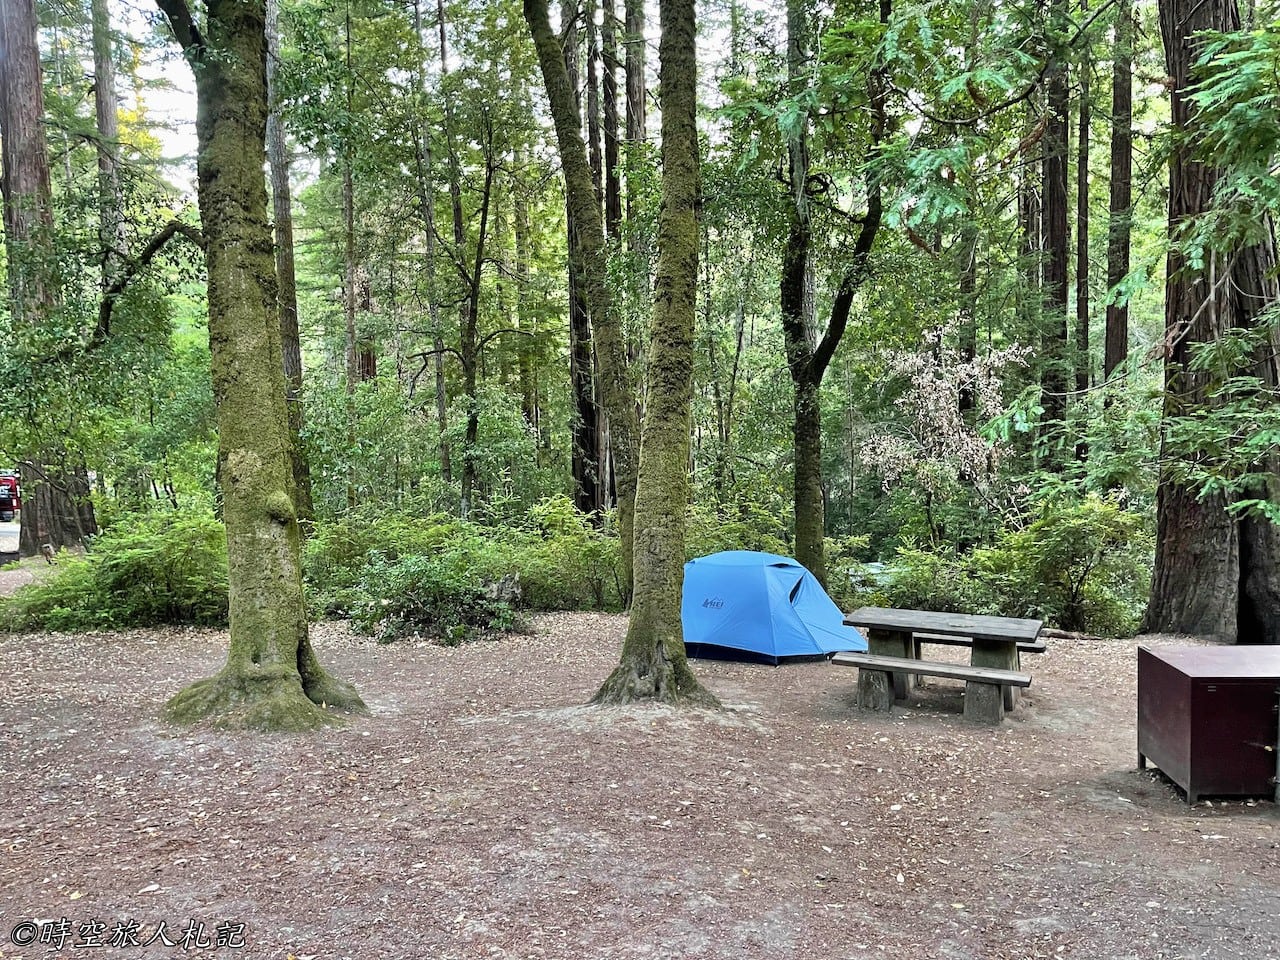 Portola redwood state park 露營